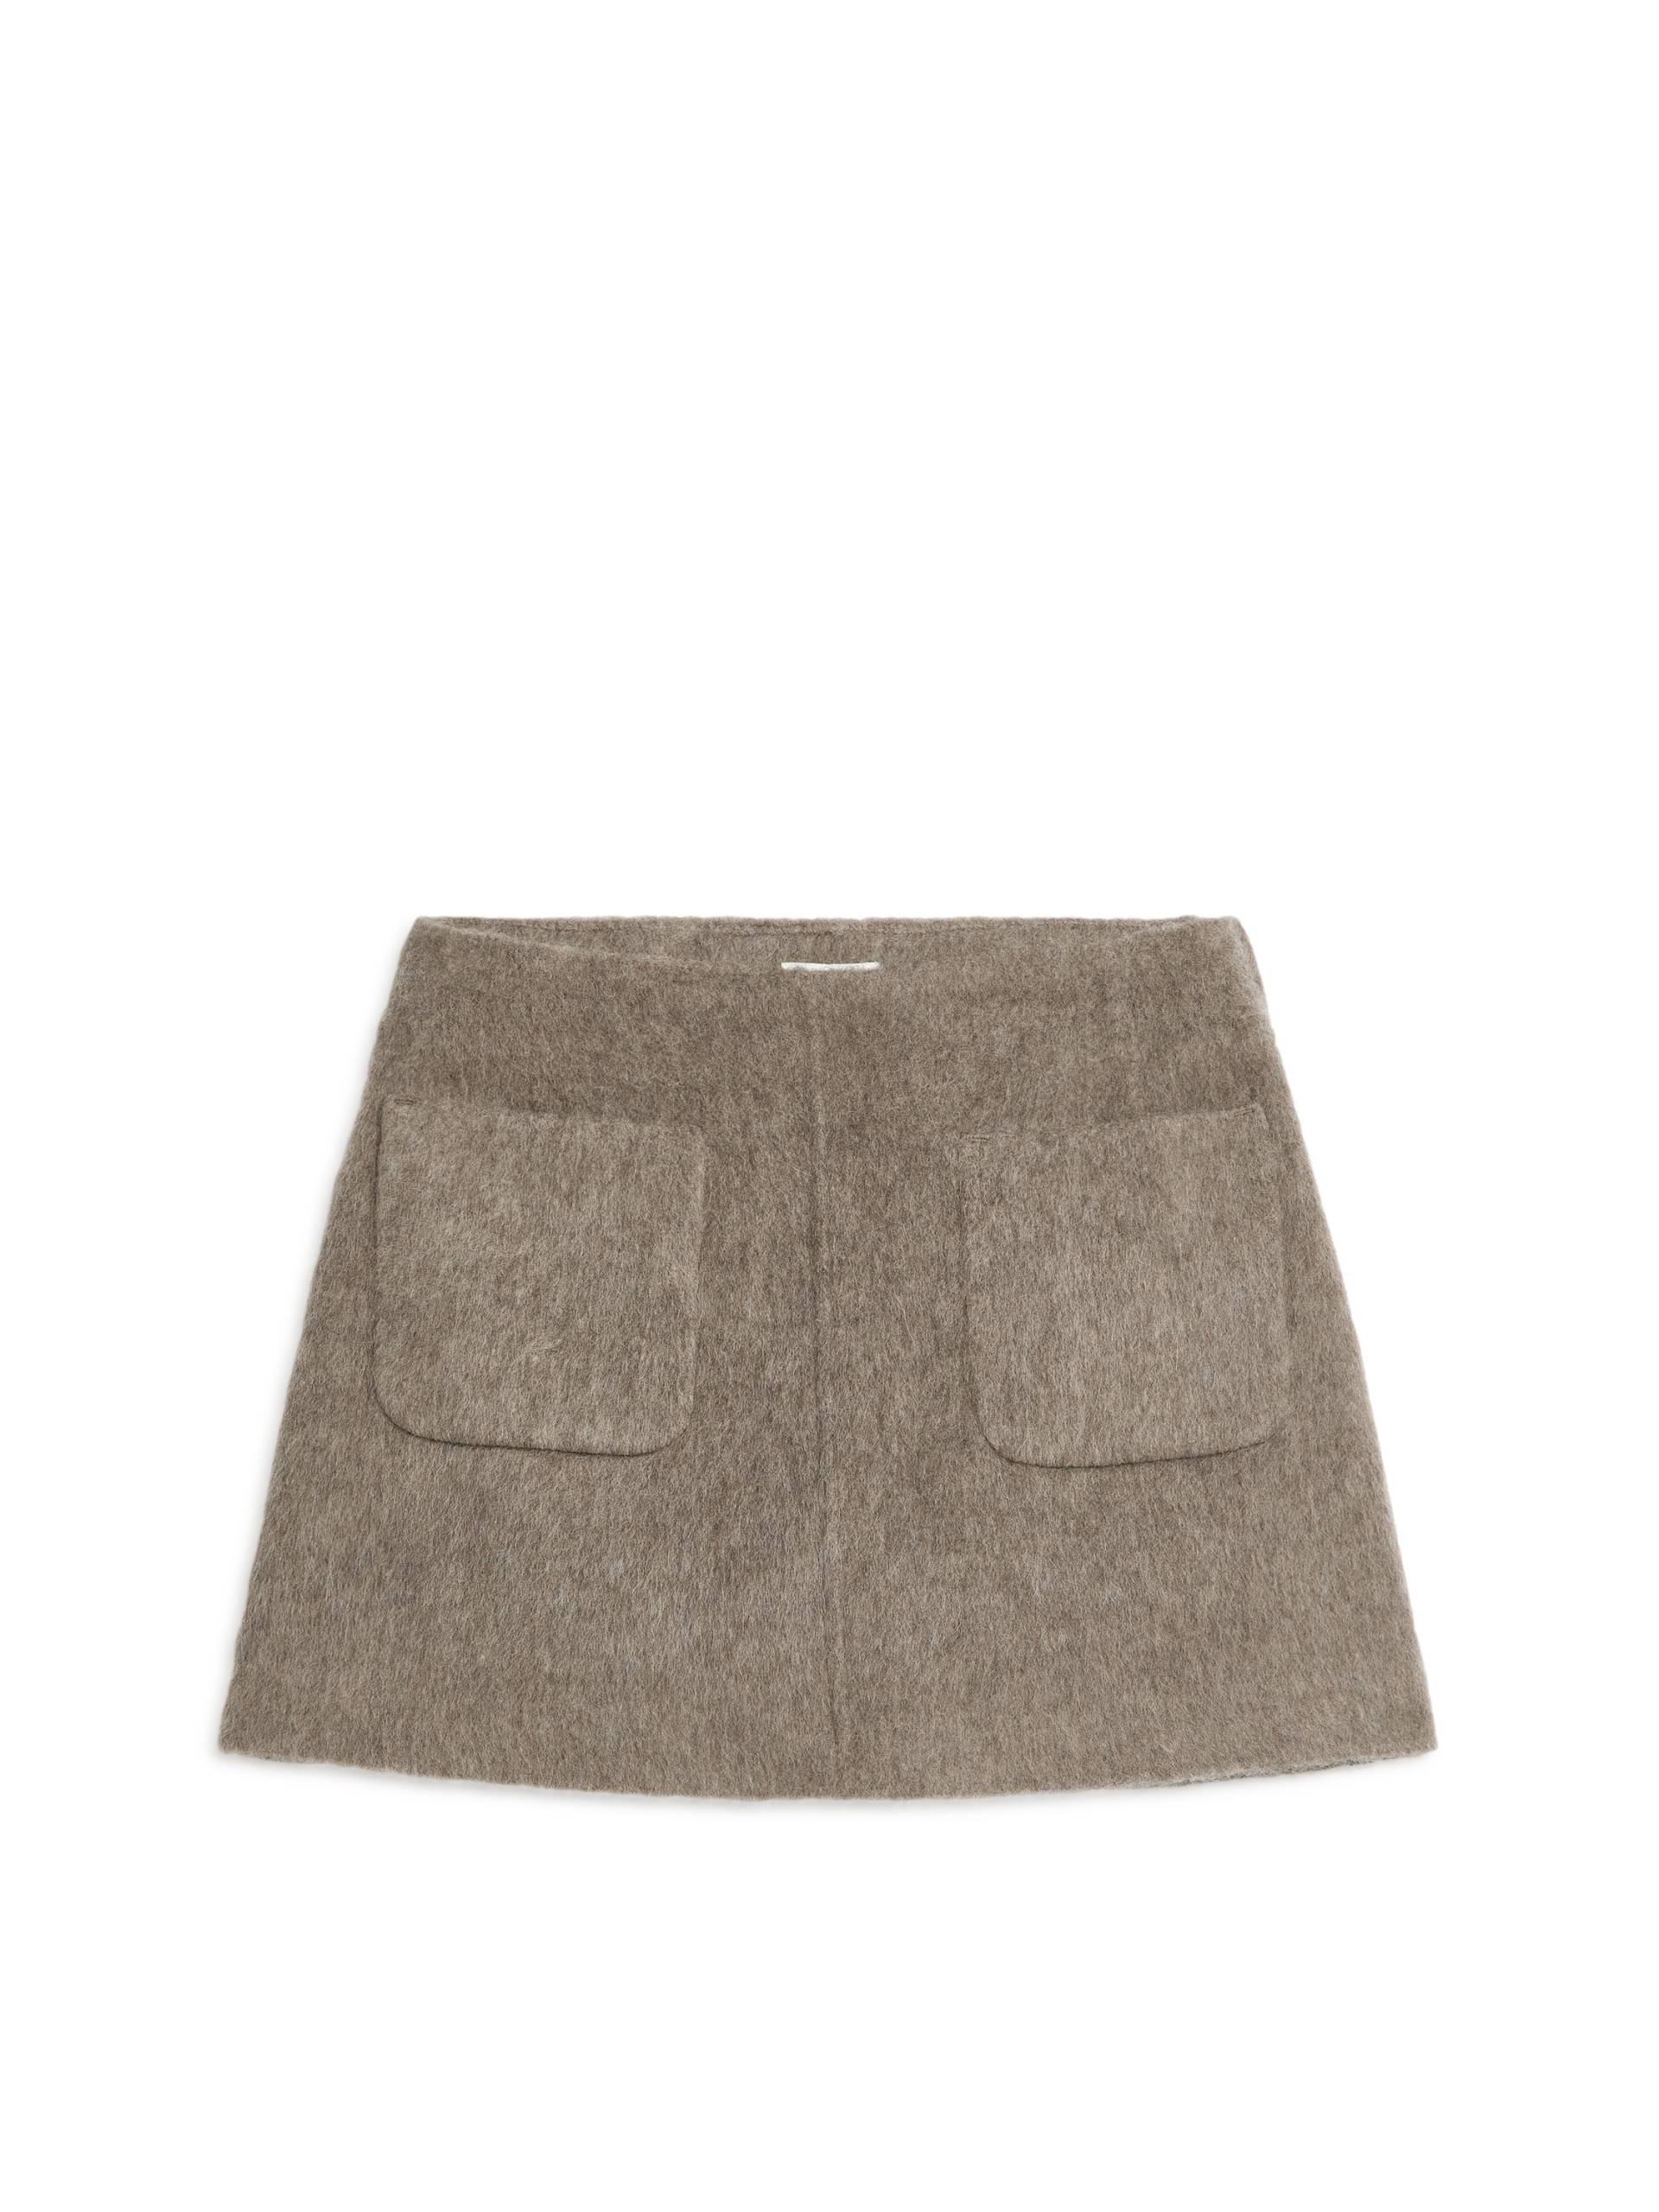 Arket Minirock aus Wolle Taupe, Röcke in Größe 36. Farbe: Mole von Arket